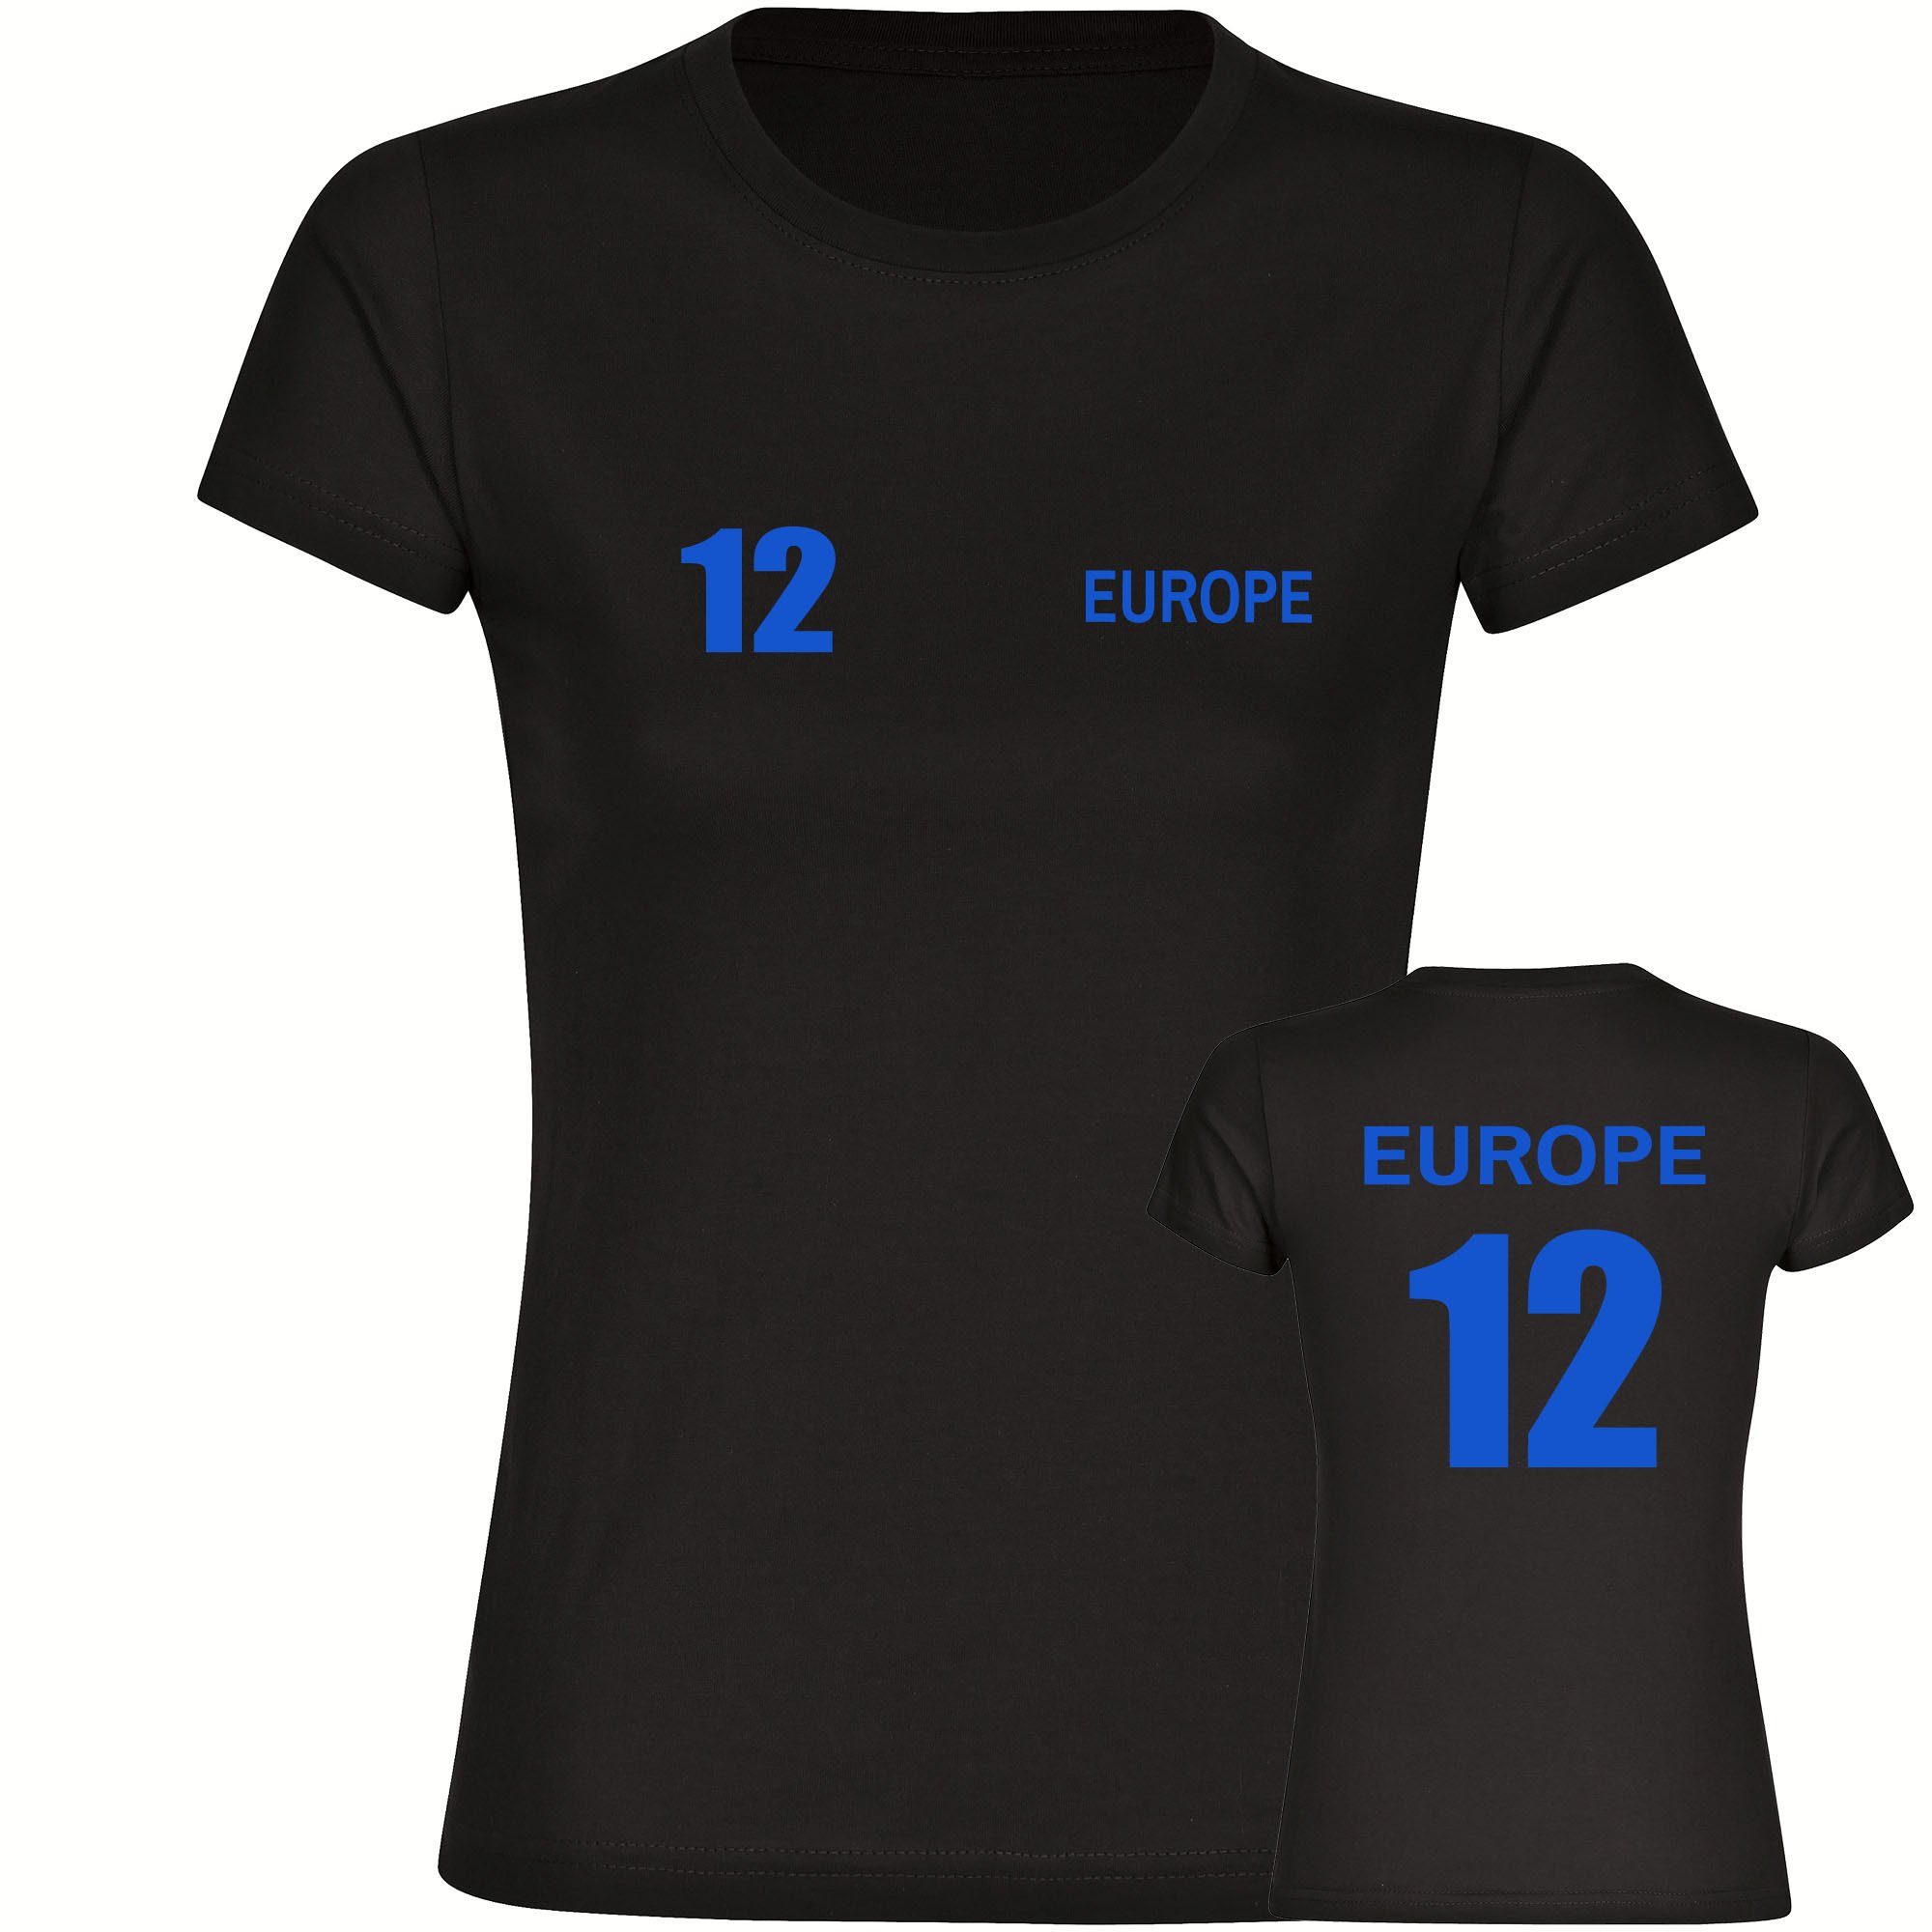 multifanshop T-Shirt Damen Europe - Trikot 12 - Frauen